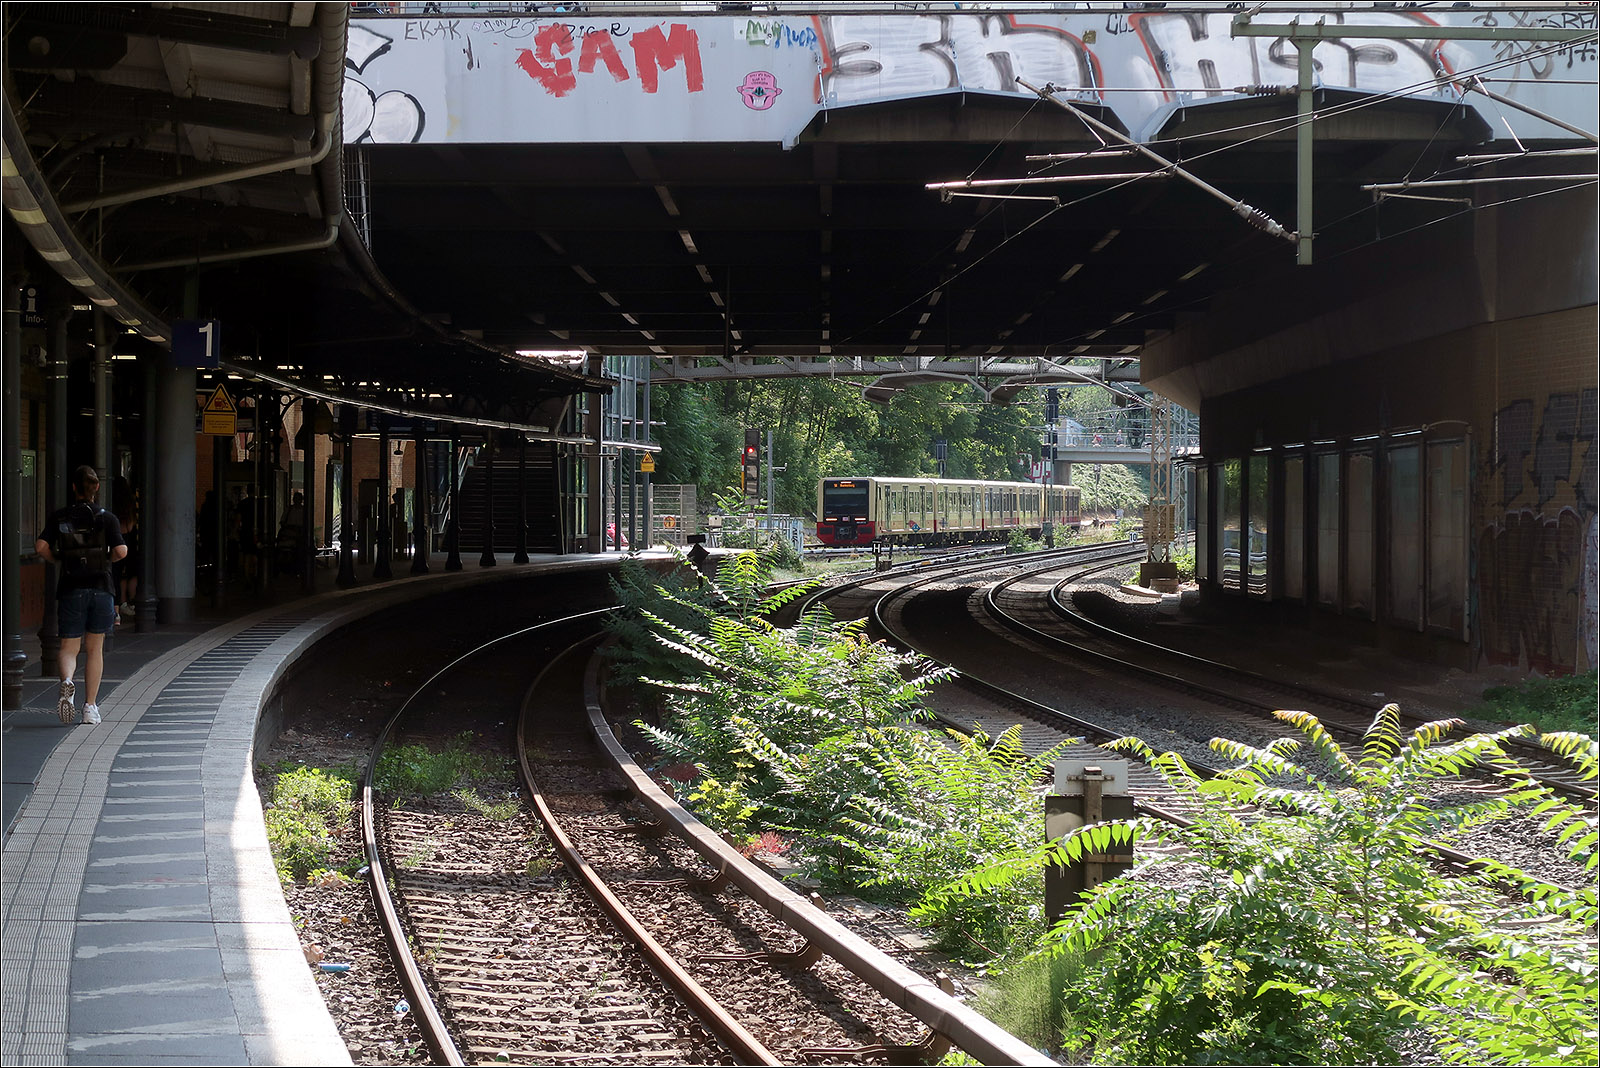 Licht und Schatten im S-Bahnhof - 

...und ein bisschen Grün zwischen den Gleisen. Im Hintergrund fährt ein S-Bahnzug der Baureihe 483/484 auf der Ringlinie S42 in die Station ein.

Berlin, Schönhauser Allee, 14.07.2023 (M)